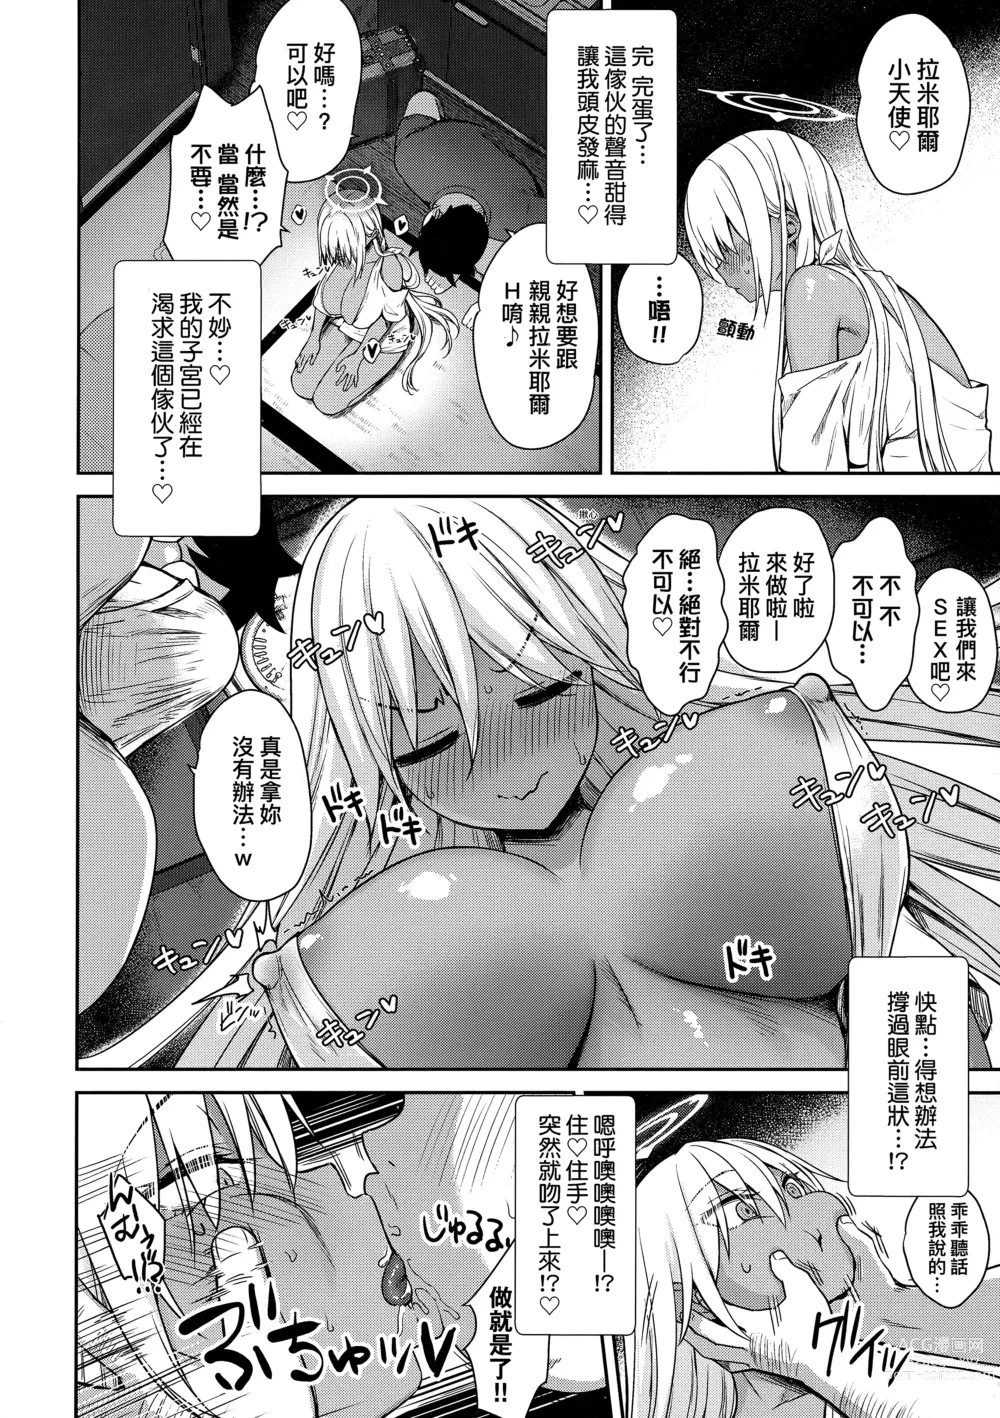 Page 185 of manga 鄰居家的傲嬌淫魔美眉 (decensored)